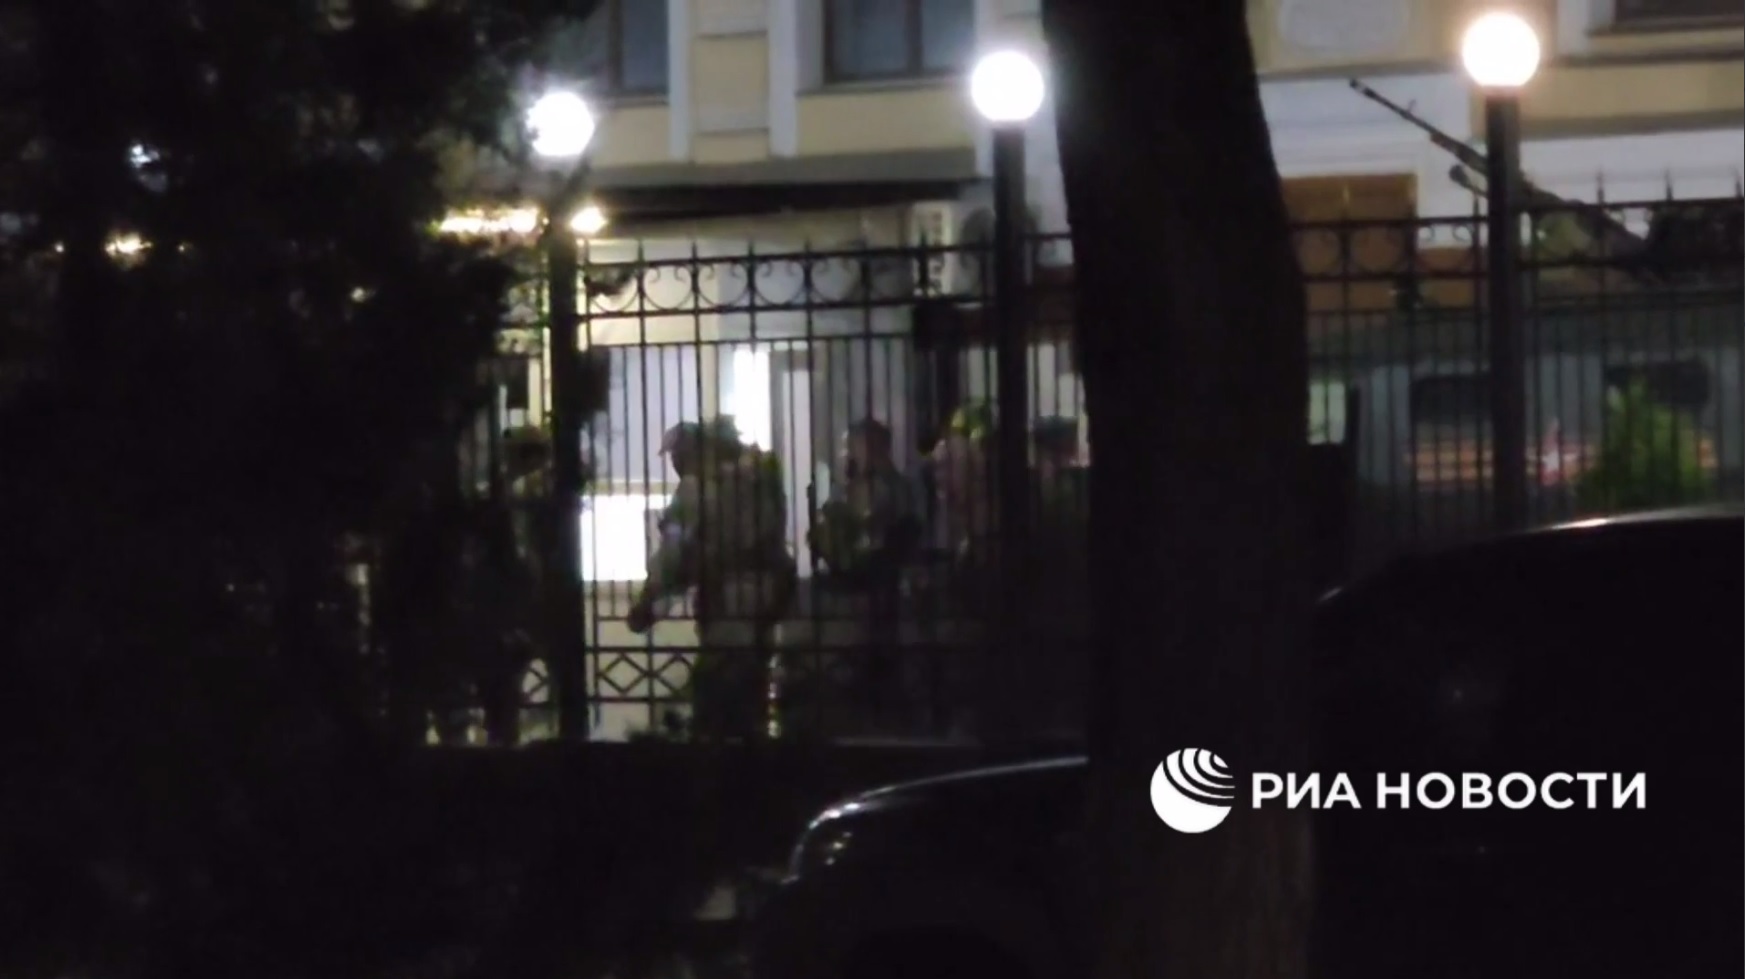 Скриншот видеоролика об отъезде ЧВК ''Вагнер'' из штаба ЮВО. Источник - телеграм-канал РИА ''Новости''